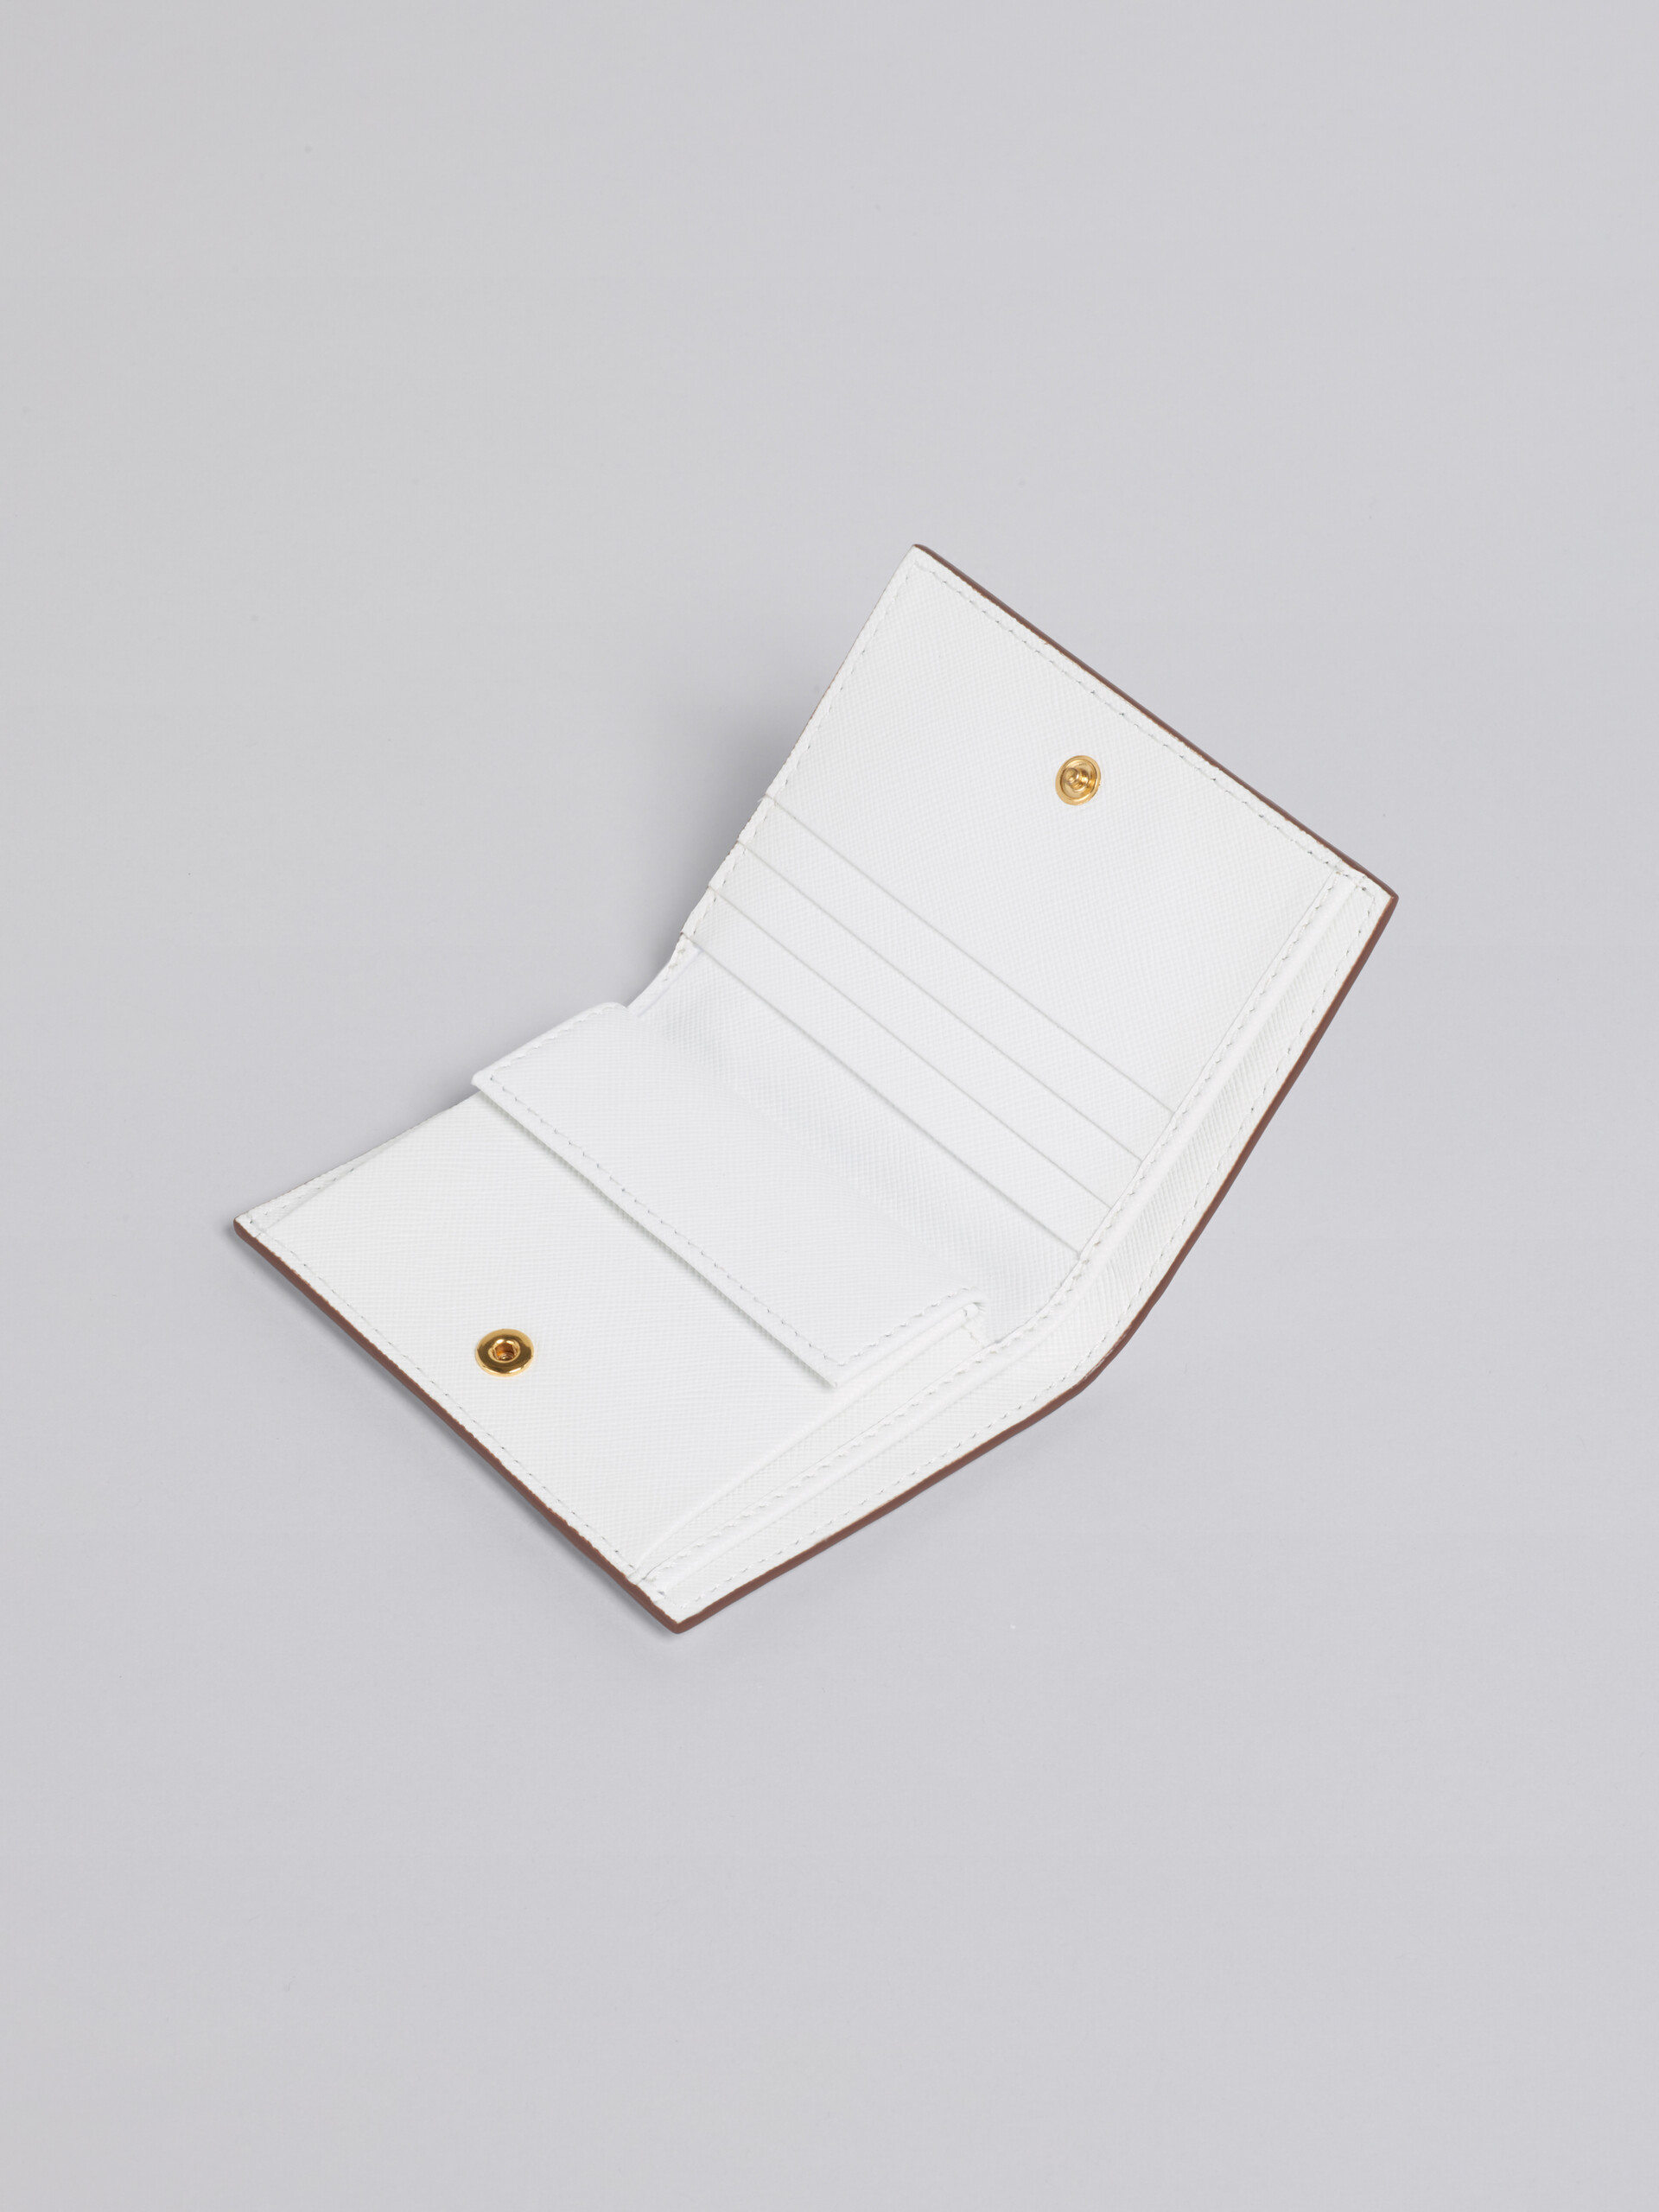 Portafoglio bi-fold in saffiano nero - Portafogli - Image 4